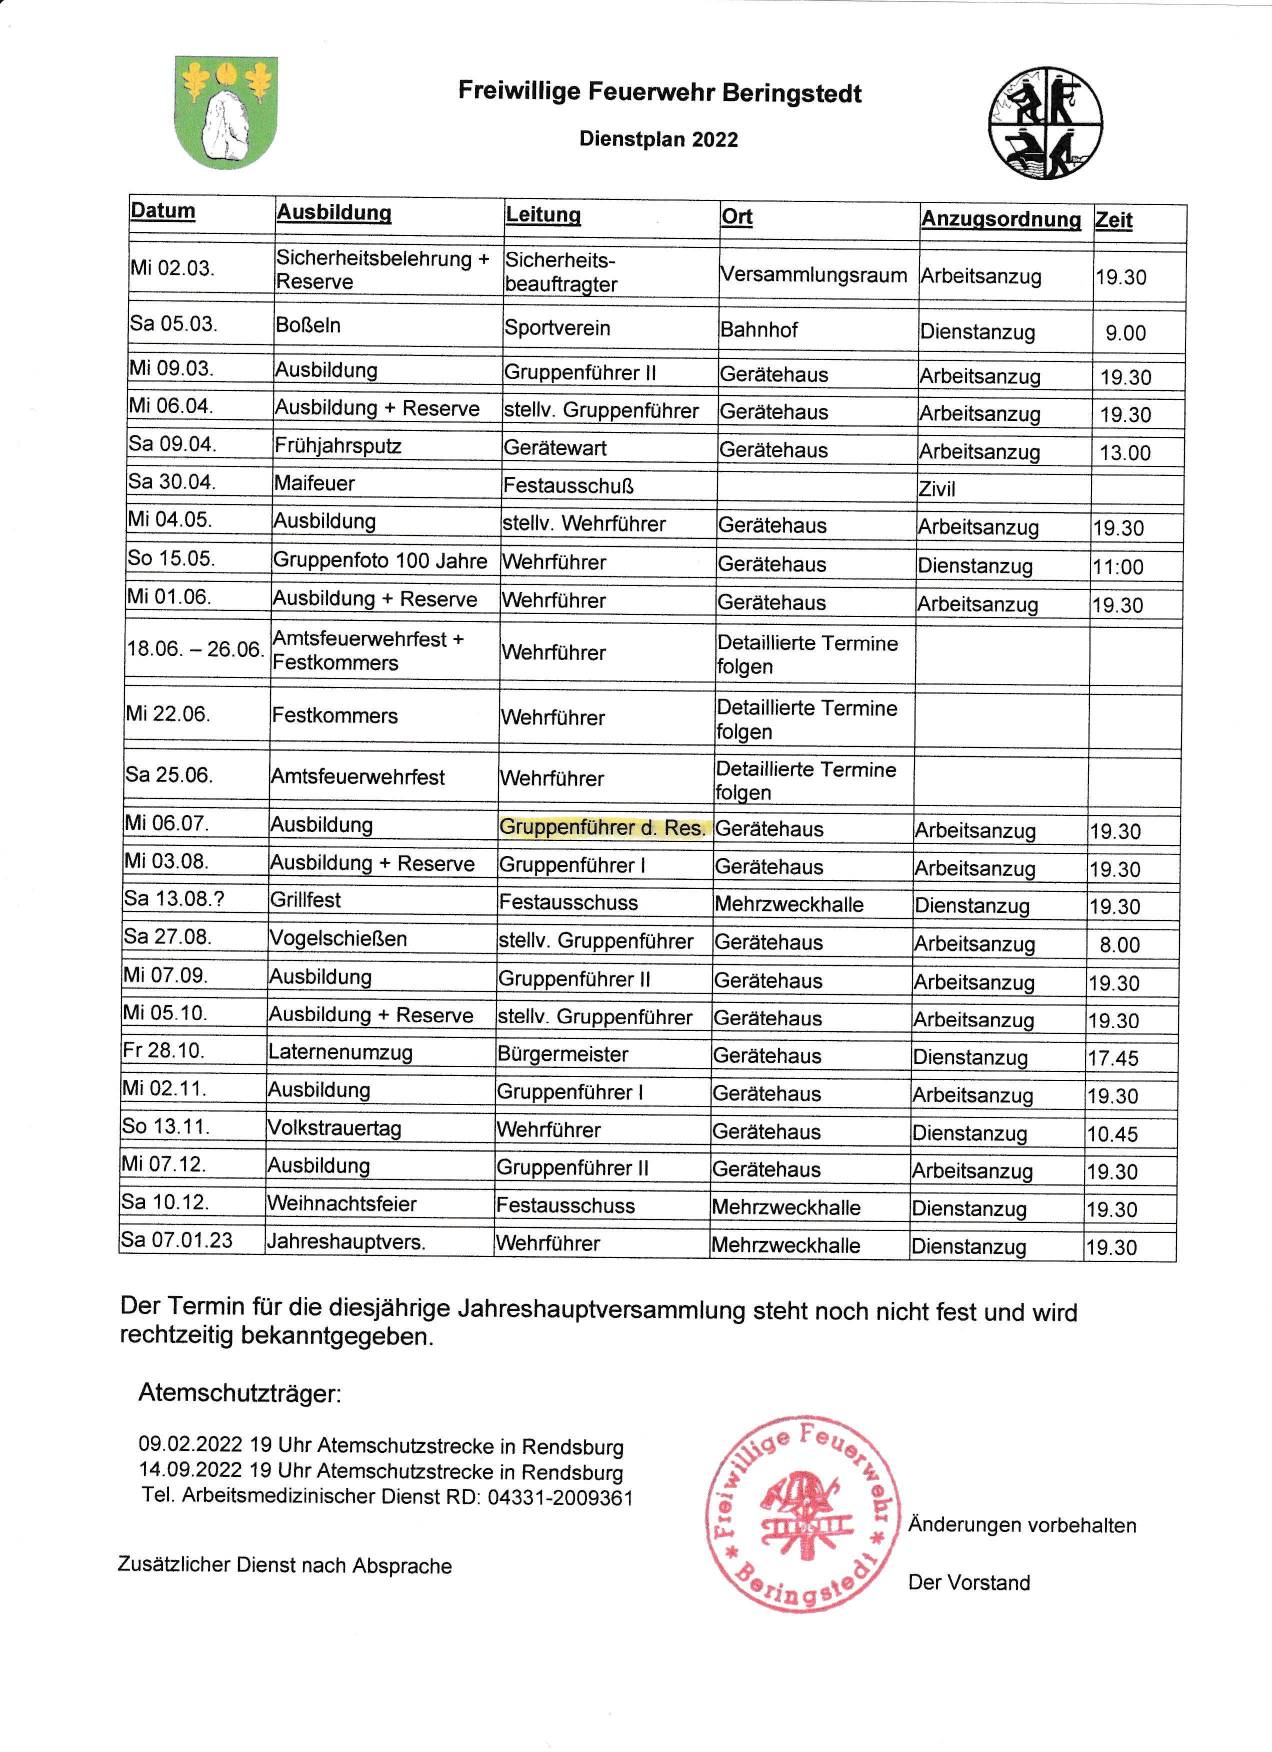 Dienstplan Feuerwehr Beringstedt